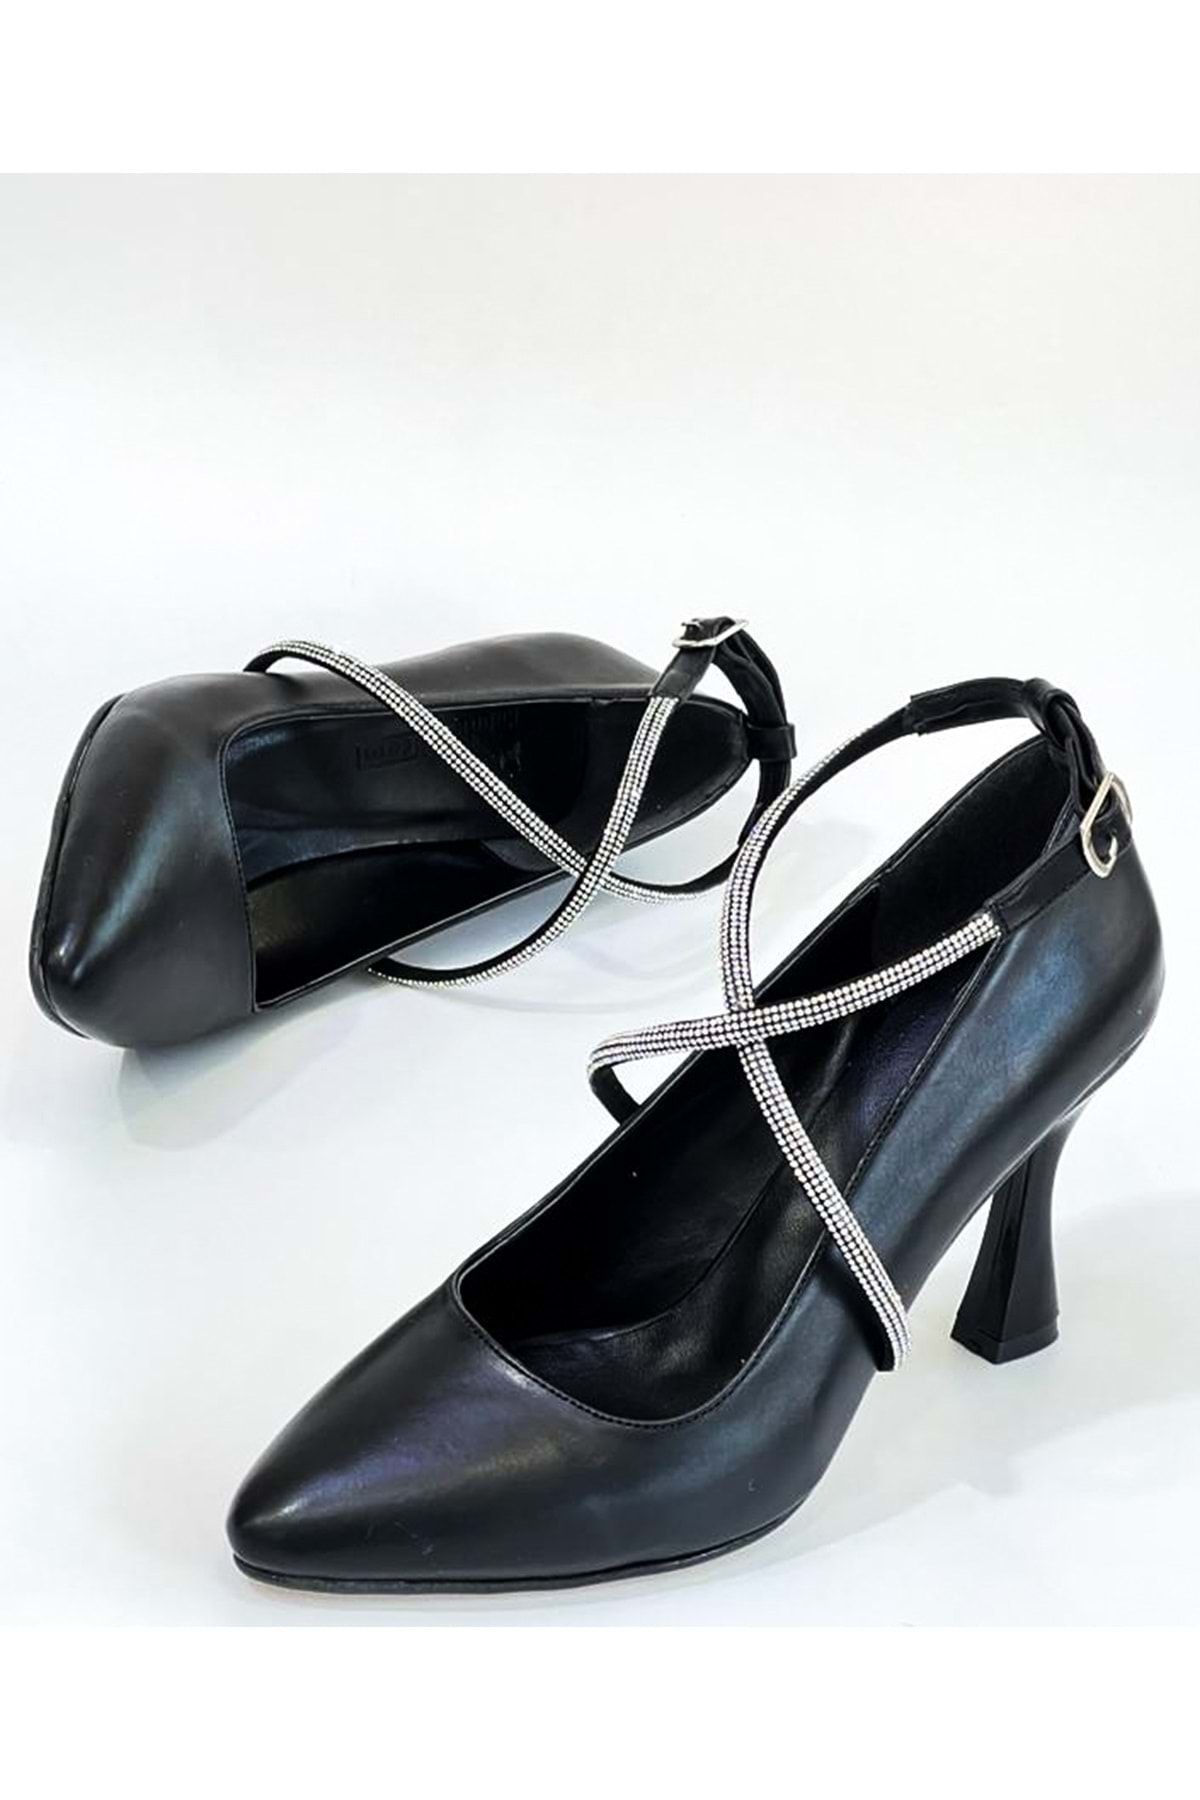 bulutmod Siyah Kadın Taşlı Bilekten Dolamalı Stiletto Topuklu Ayakkabı - Siyah - 39